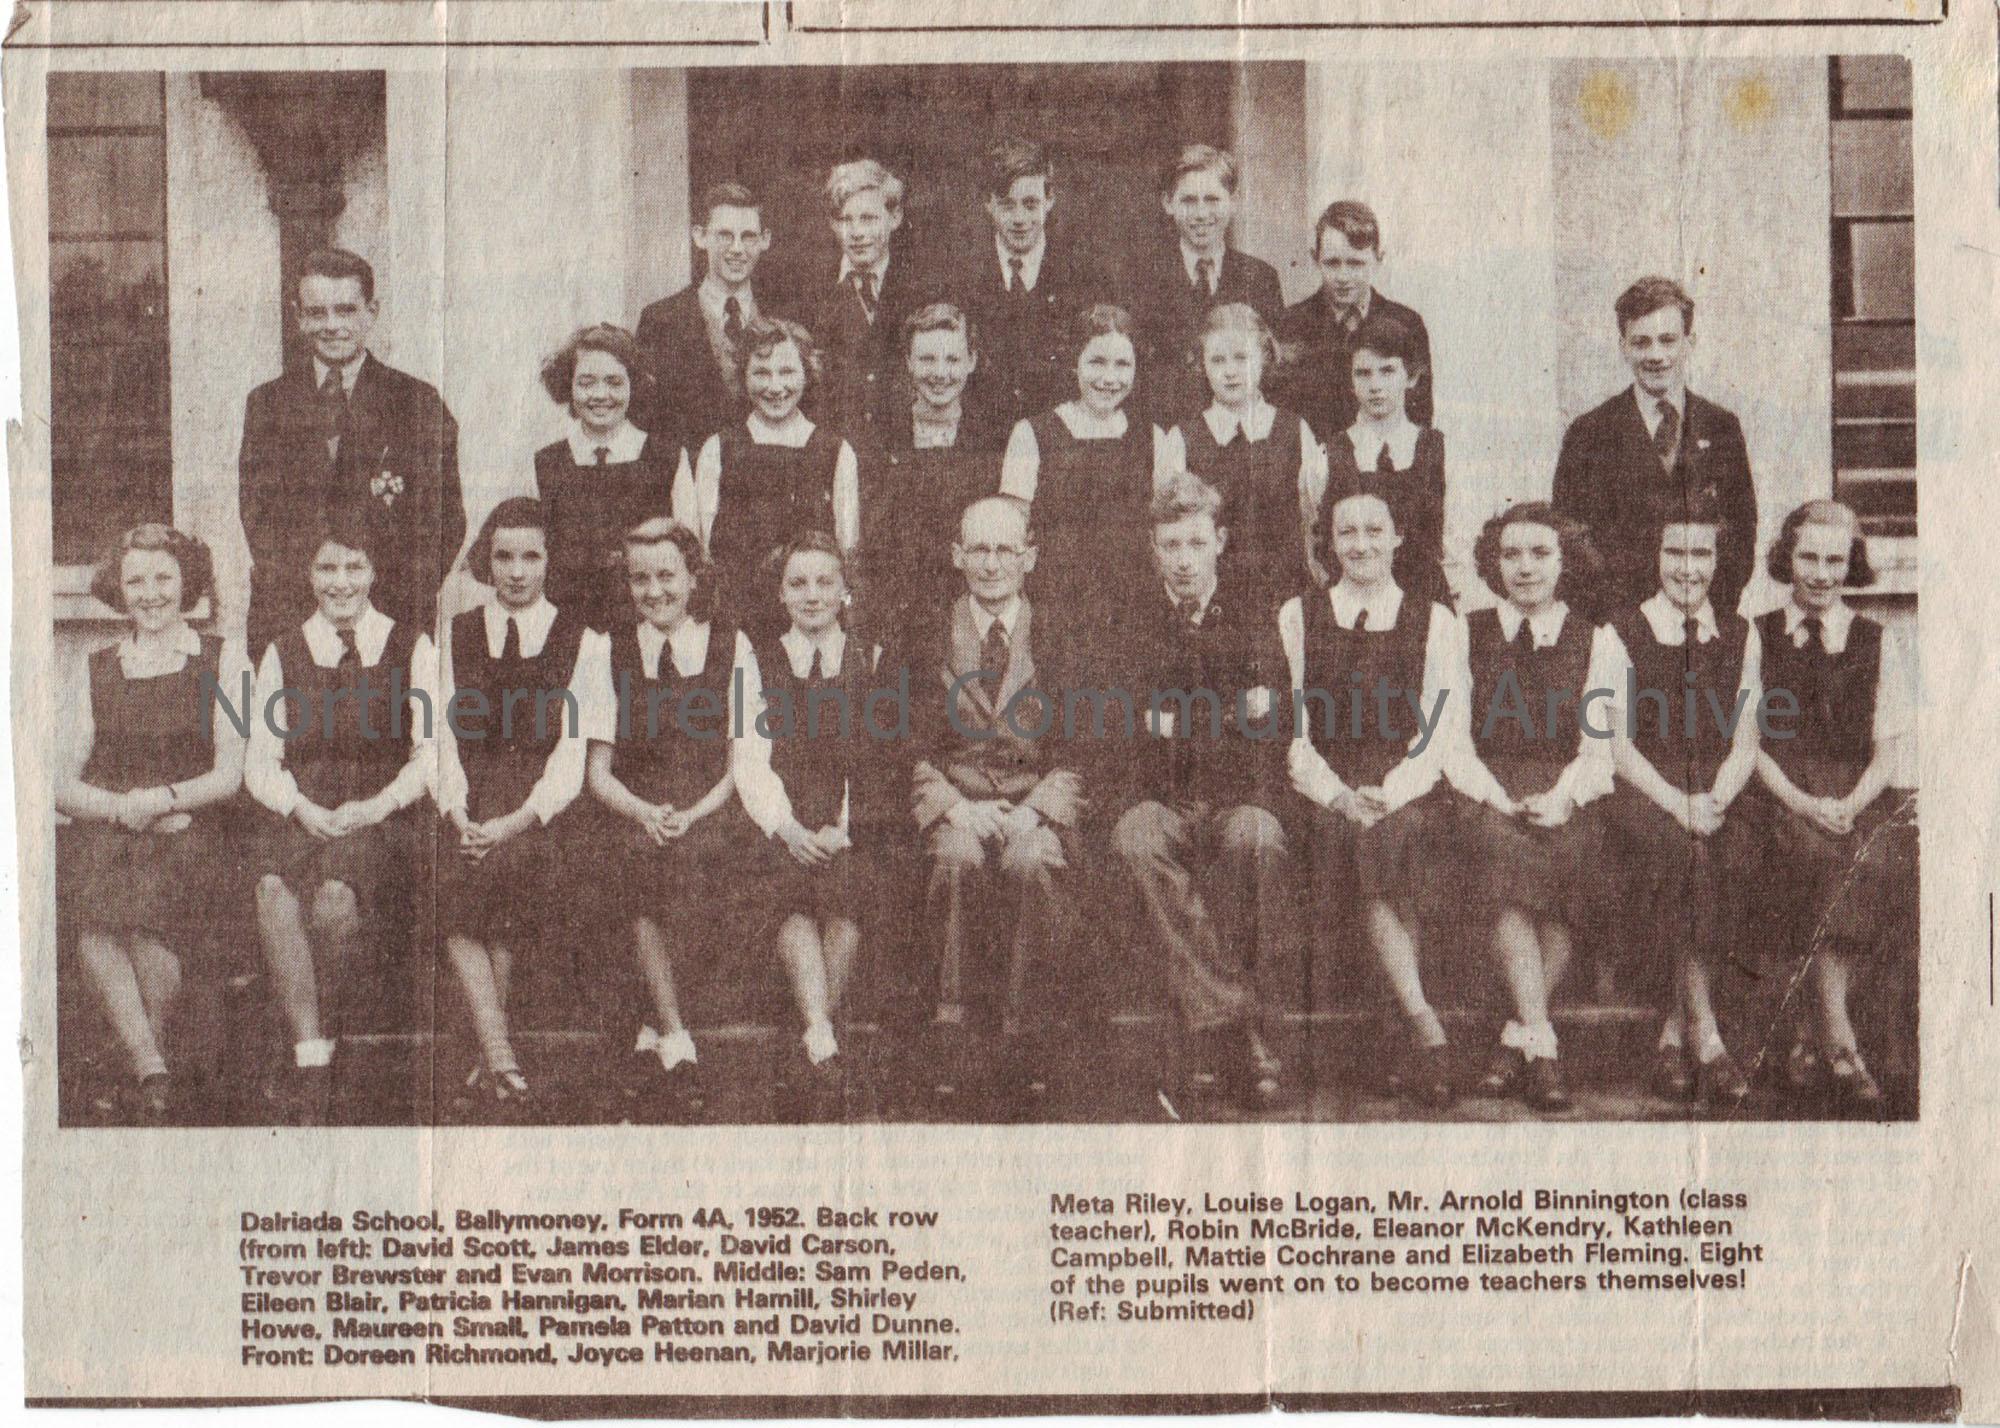 Newspaper clipping of Dalriada school, Form 4A, 1952